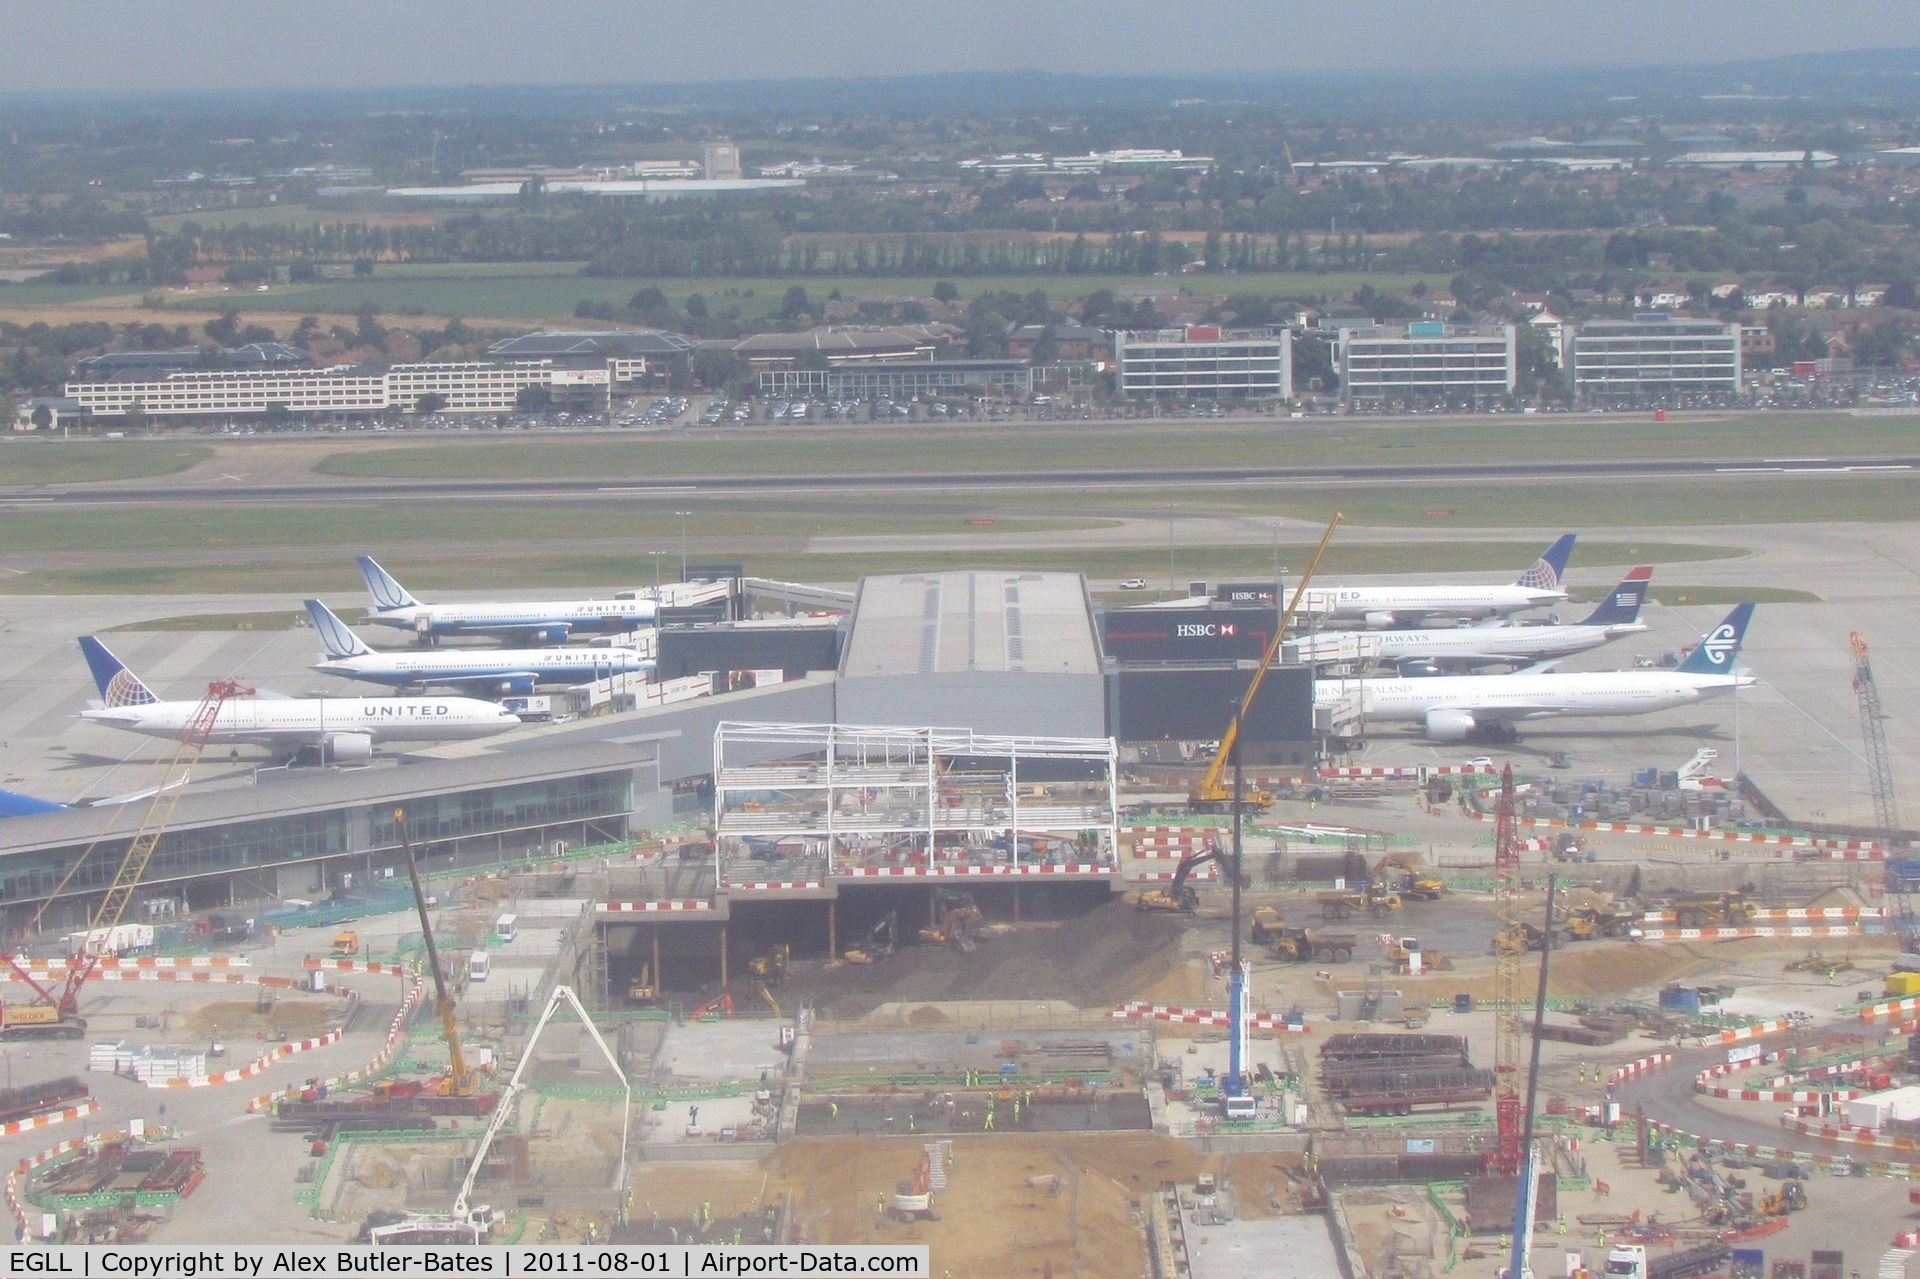 London Heathrow Airport, London, England United Kingdom (EGLL) - Taken from G-VBUG LHR-IAD